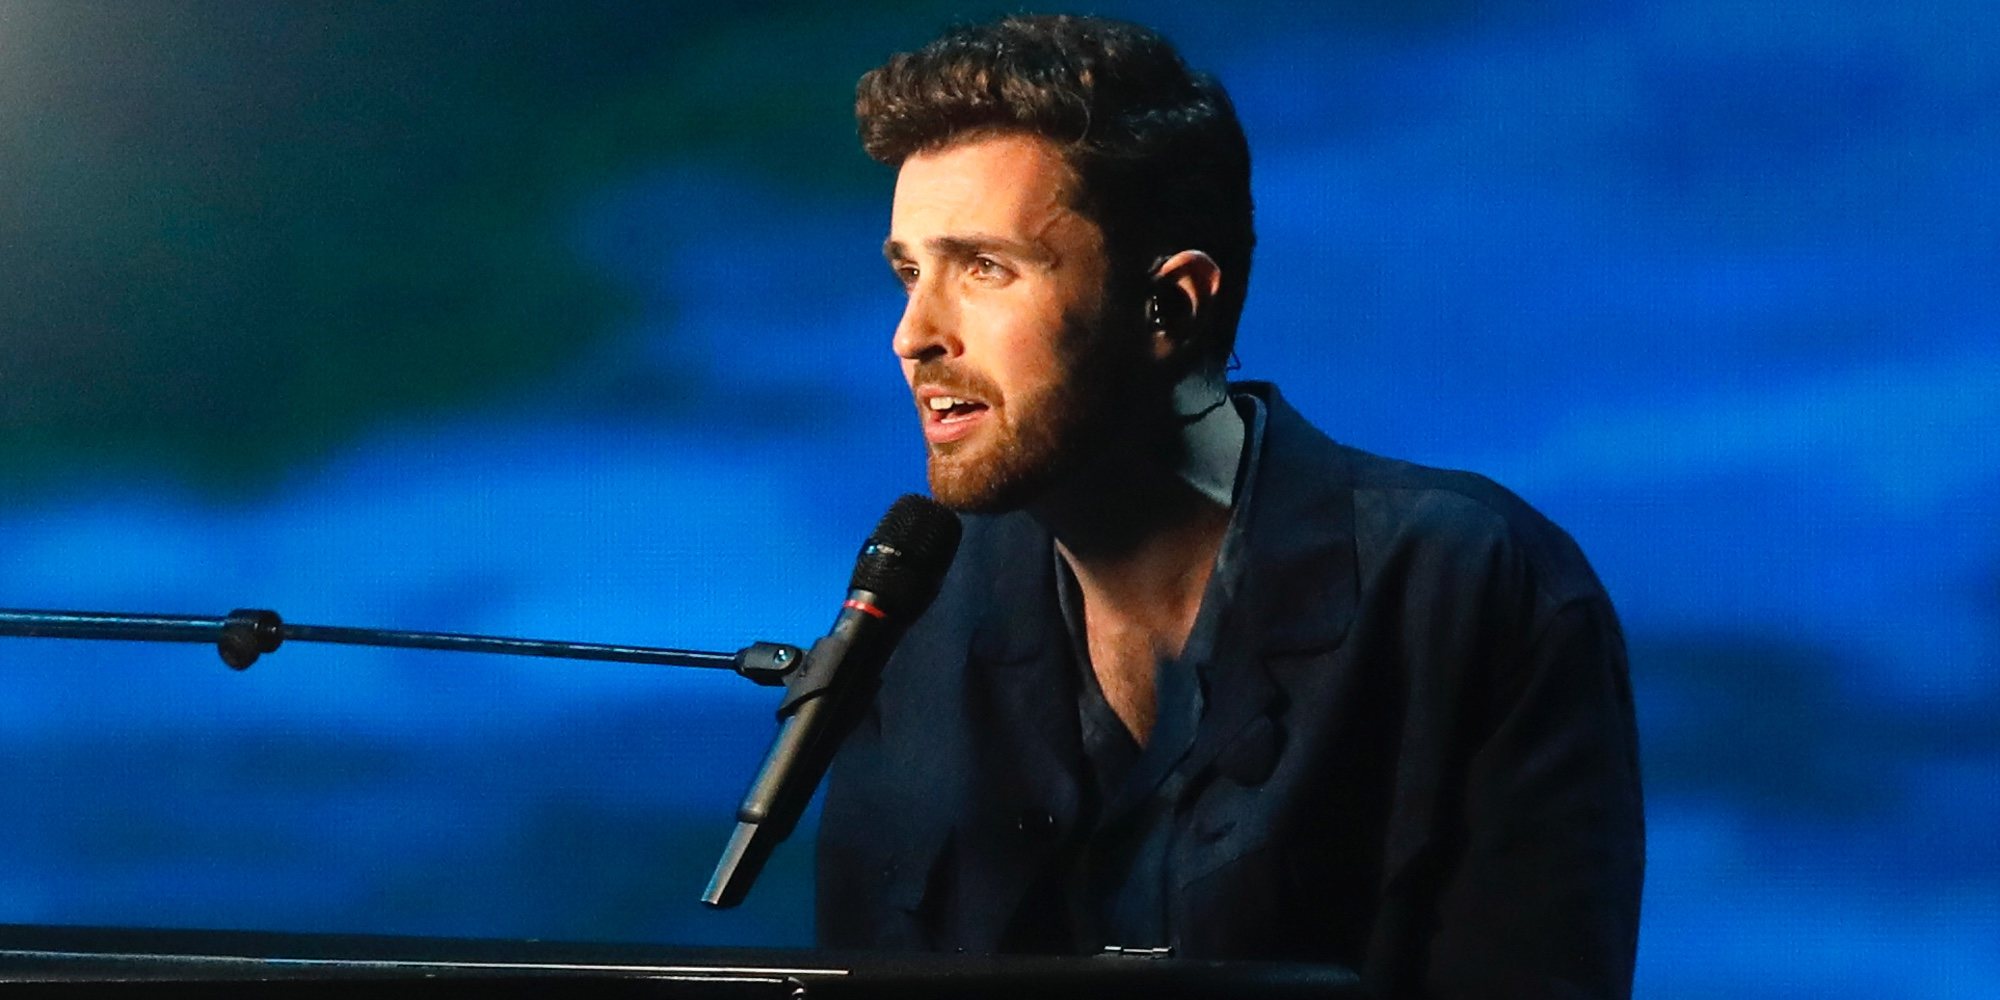 Países Bajos gana el Festival de Eurovisión 2019 con la balada 'Arcade' de Duncan Laurence